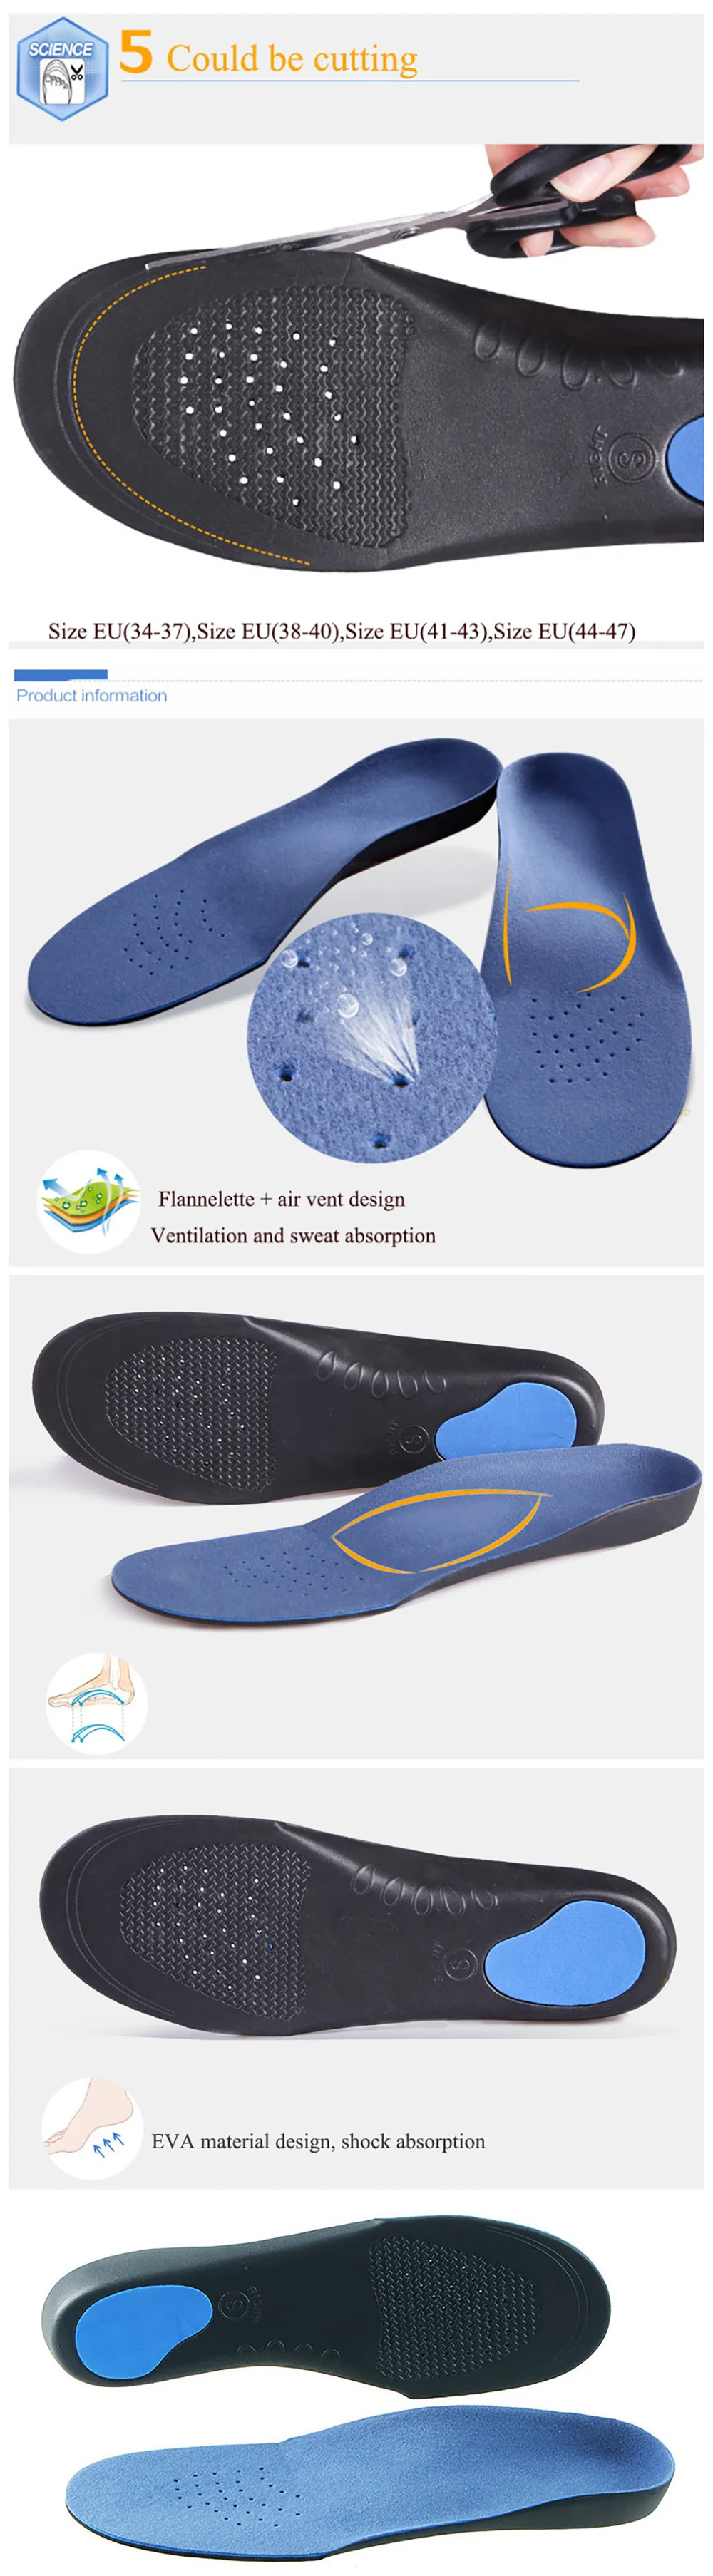 USHINE ортопедические стельки для плоской стопы для мужчин и женщин, стельки для поддержки стопы, подушечки для ухода за ногами, стельки для обуви, стельки для кроссовок